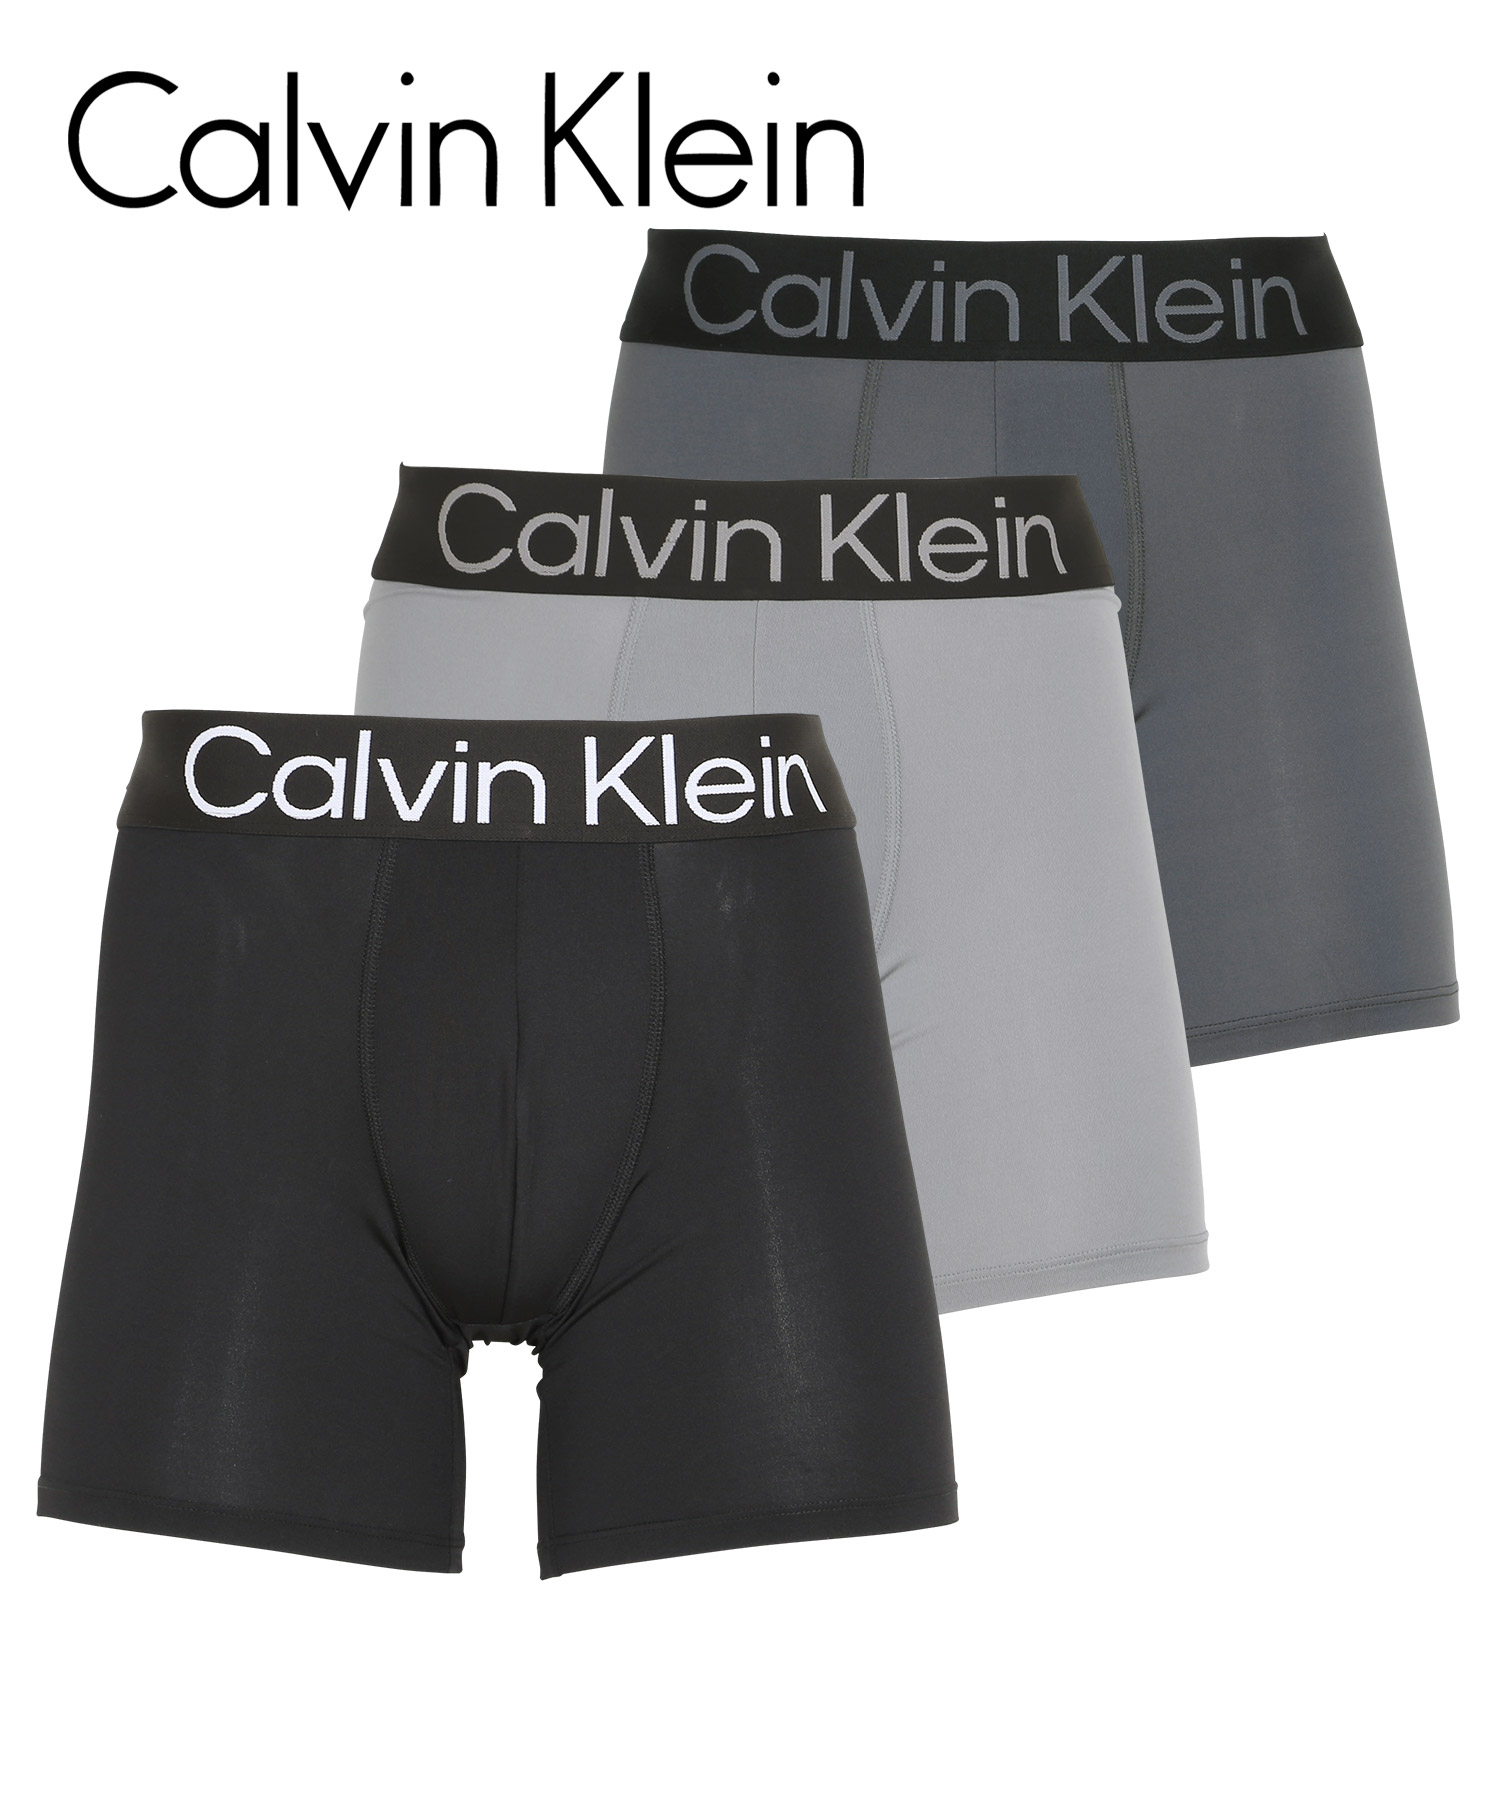 カルバンクライン Calvin Klein ボクサーパンツ 3枚セット メンズ アンダーウェア 男性下着 ツルツル 速乾 CK ロゴ 高級 ハイブランド